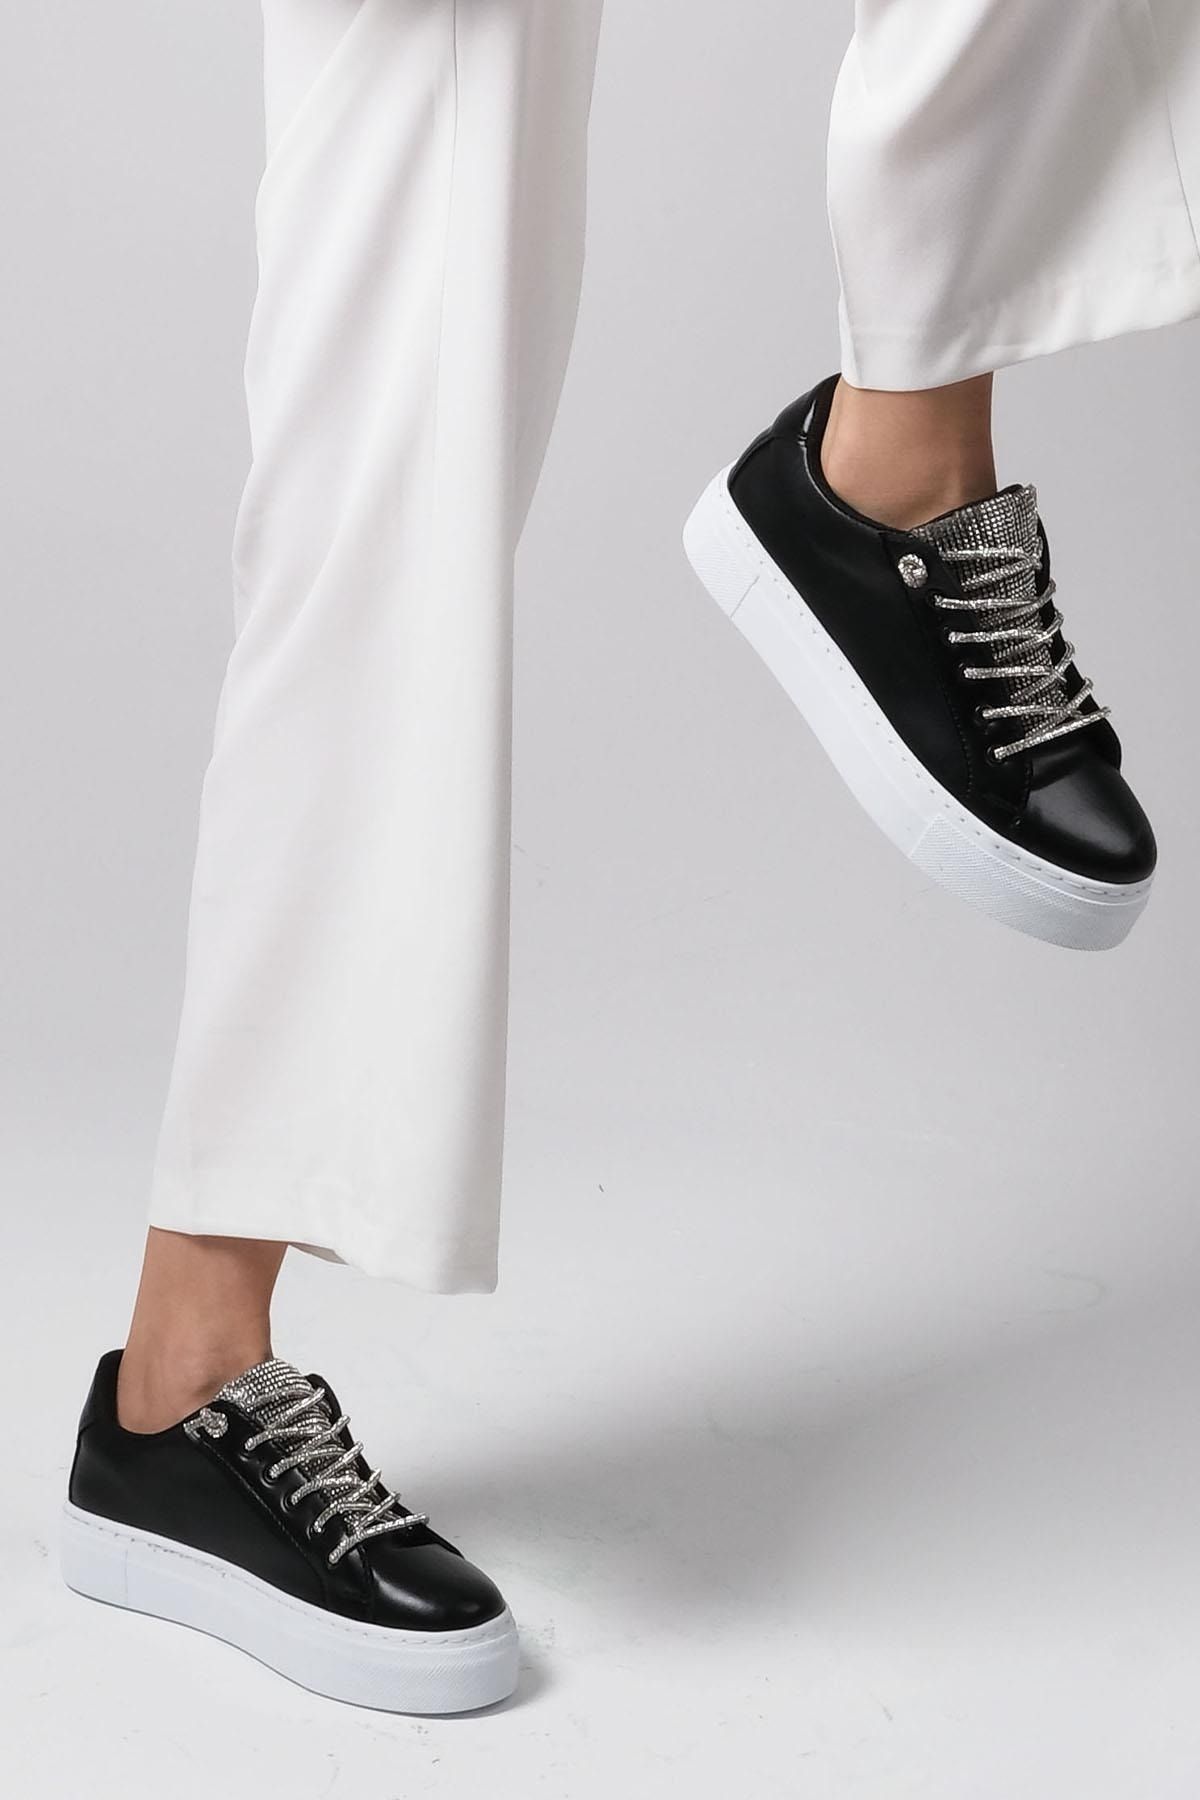 Mio Gusto Siyah Renk Kadın Günlük Sneaker Spor Ayakkabı